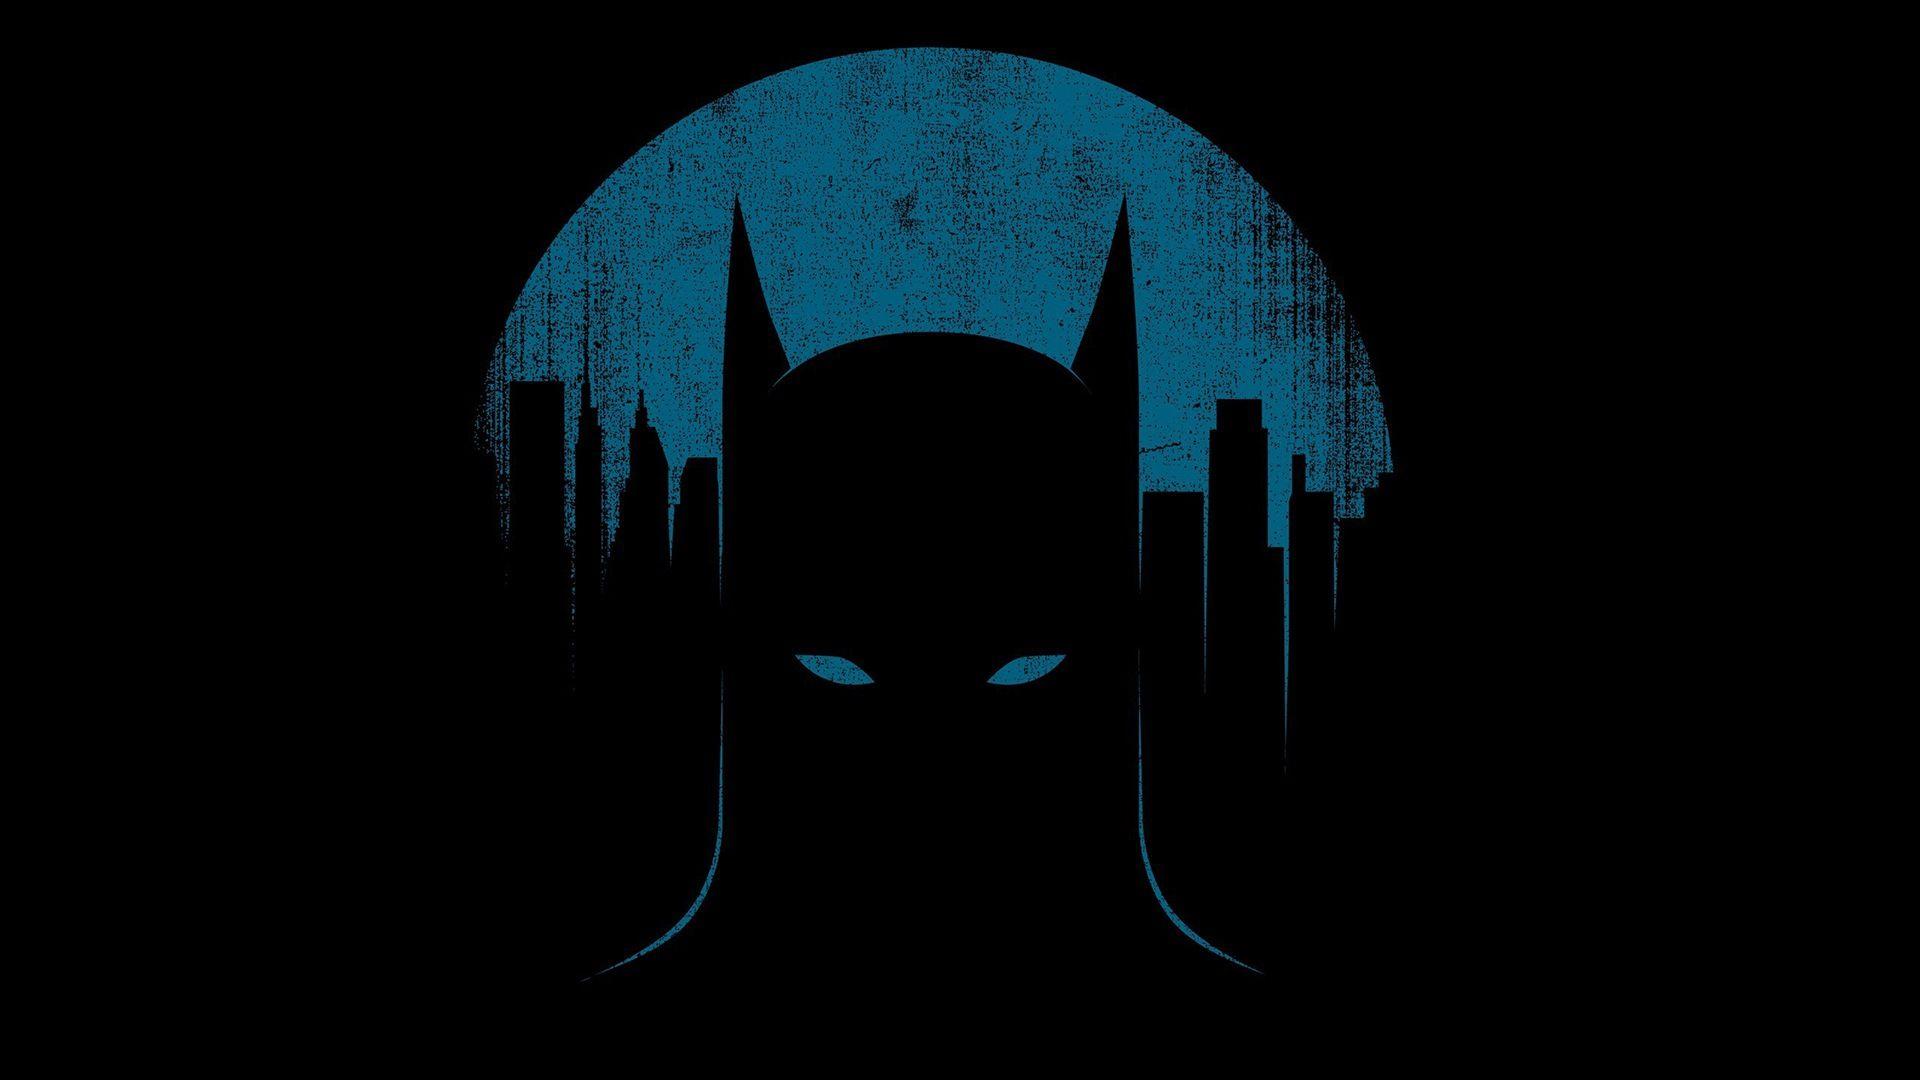 Batman Minimalist DC Comics Wallpaper